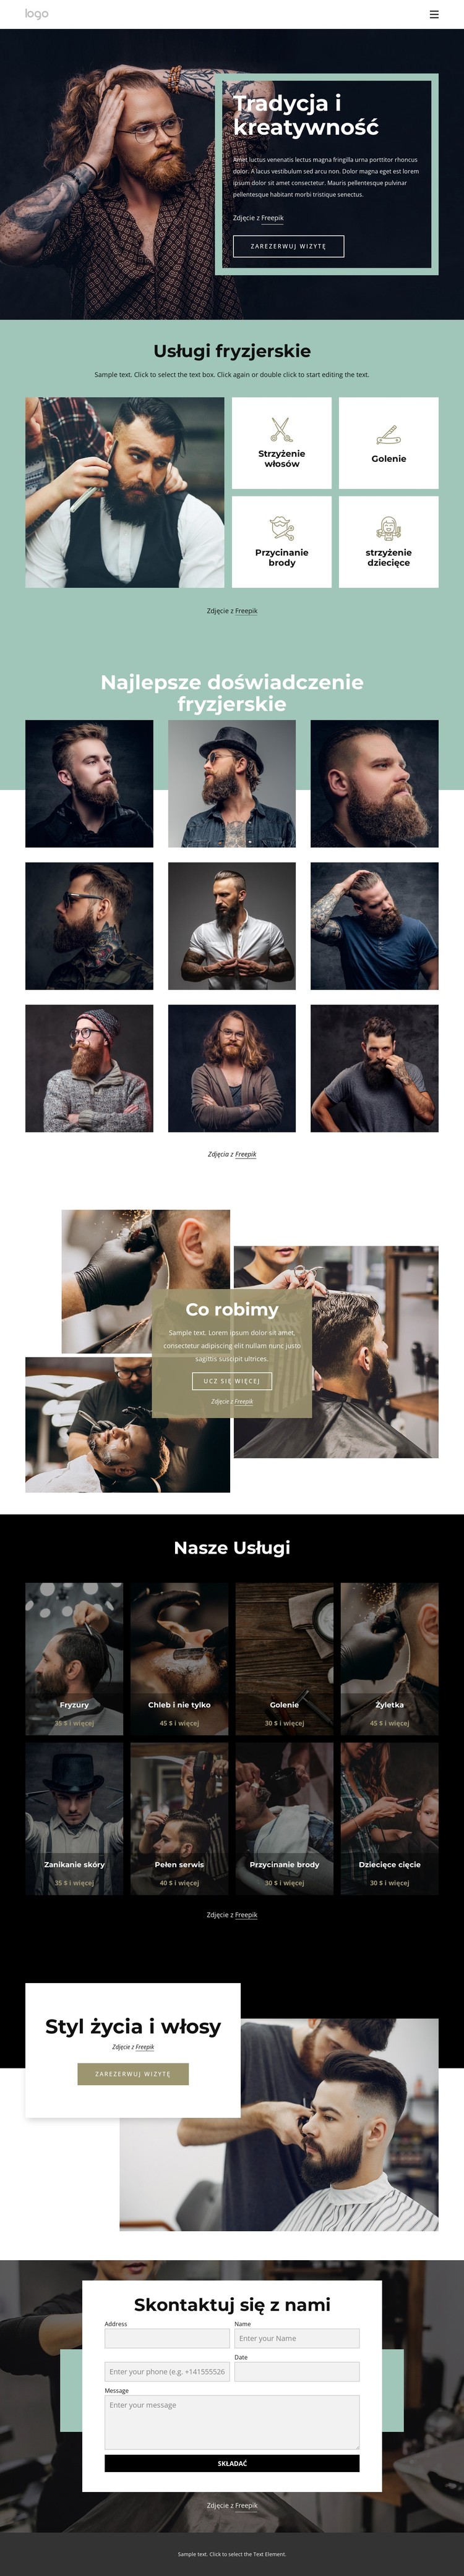 Ogólnodostępny salon fryzjerski Szablon CSS